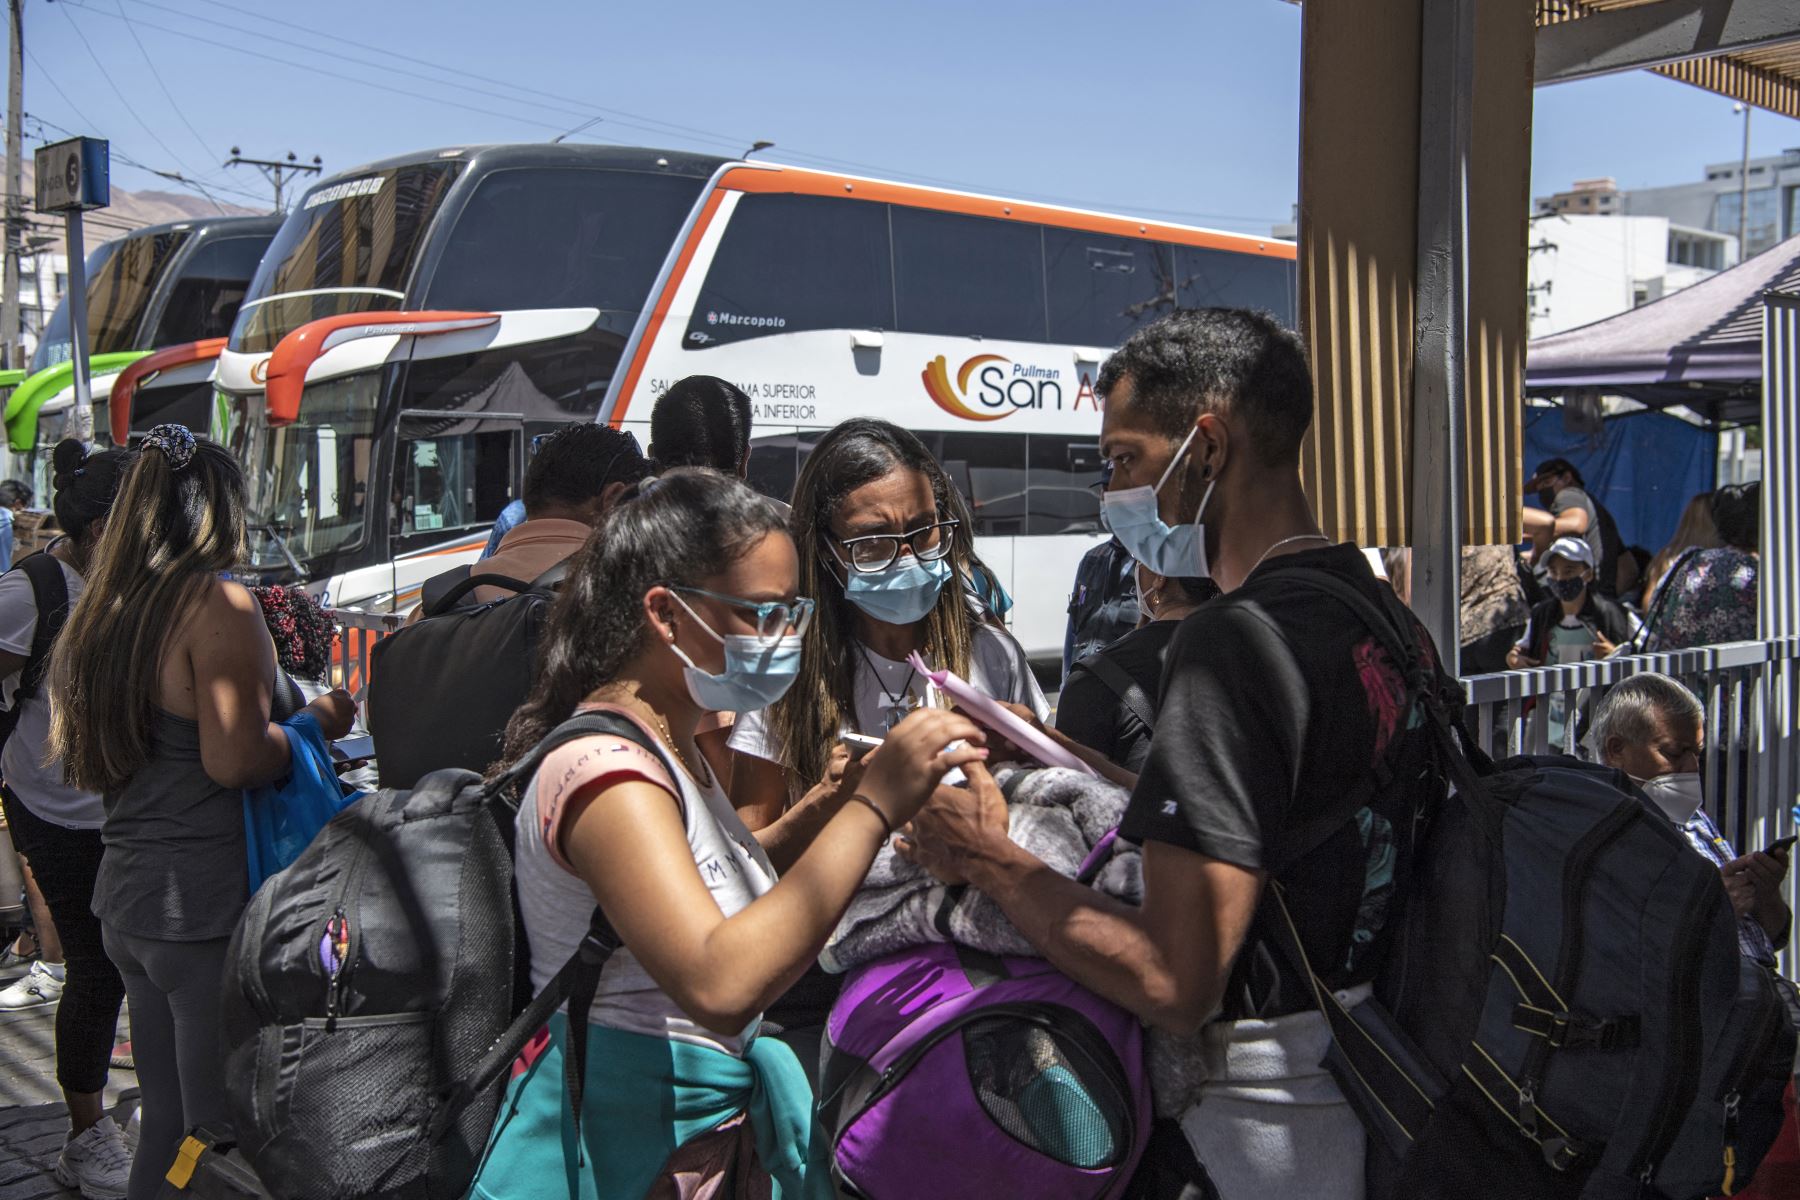 Los migrantes venezolanos Reinaldo, 26, Anyier, 40, y su hija Danyierly, 14, se preparan para abordar un autobús hacia Santiago, en Iquique, Chile. Foto: AFP